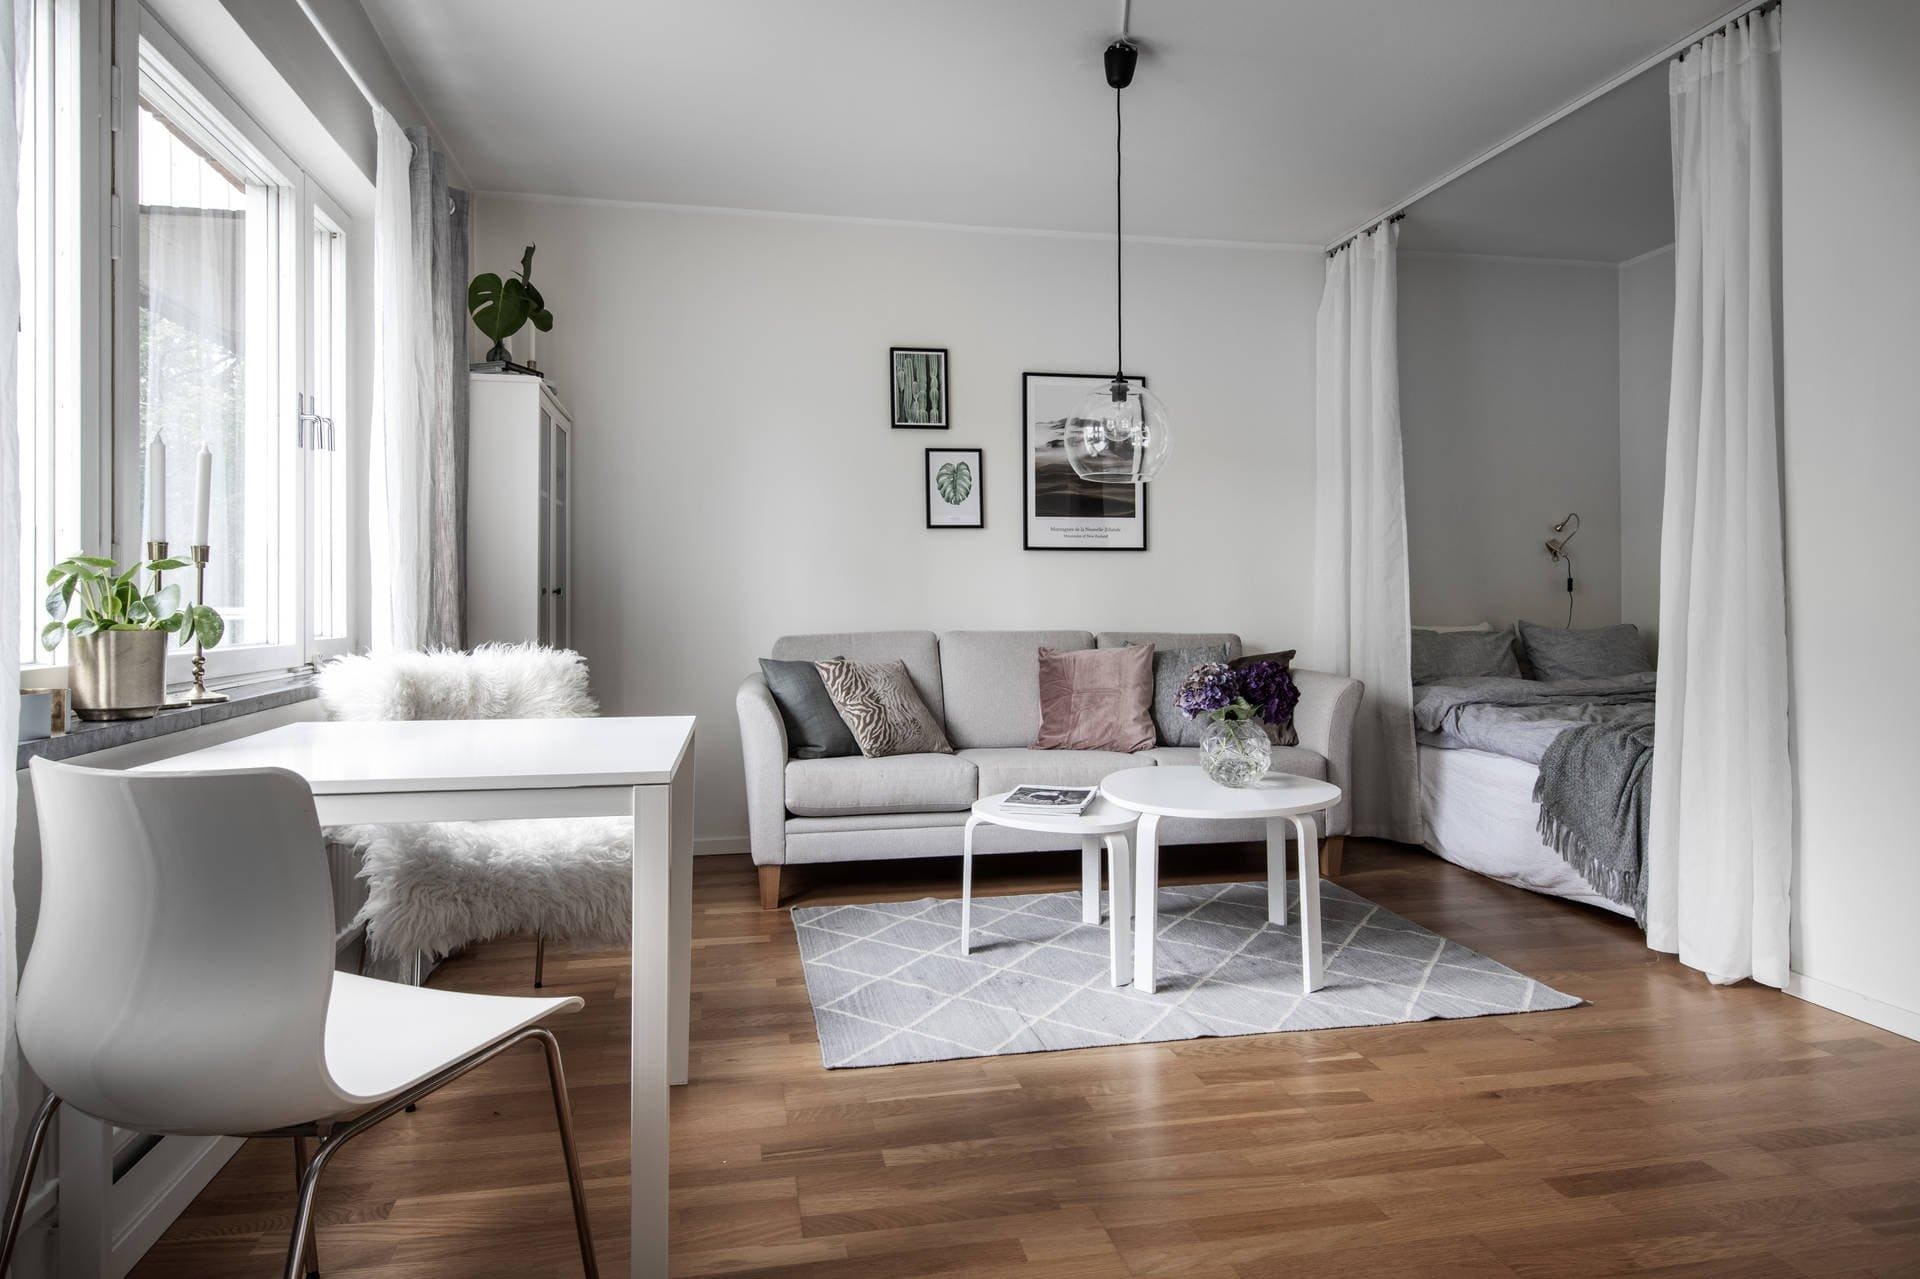 Дизайн интерьера для маленькой квартиры в скандинавском стиле